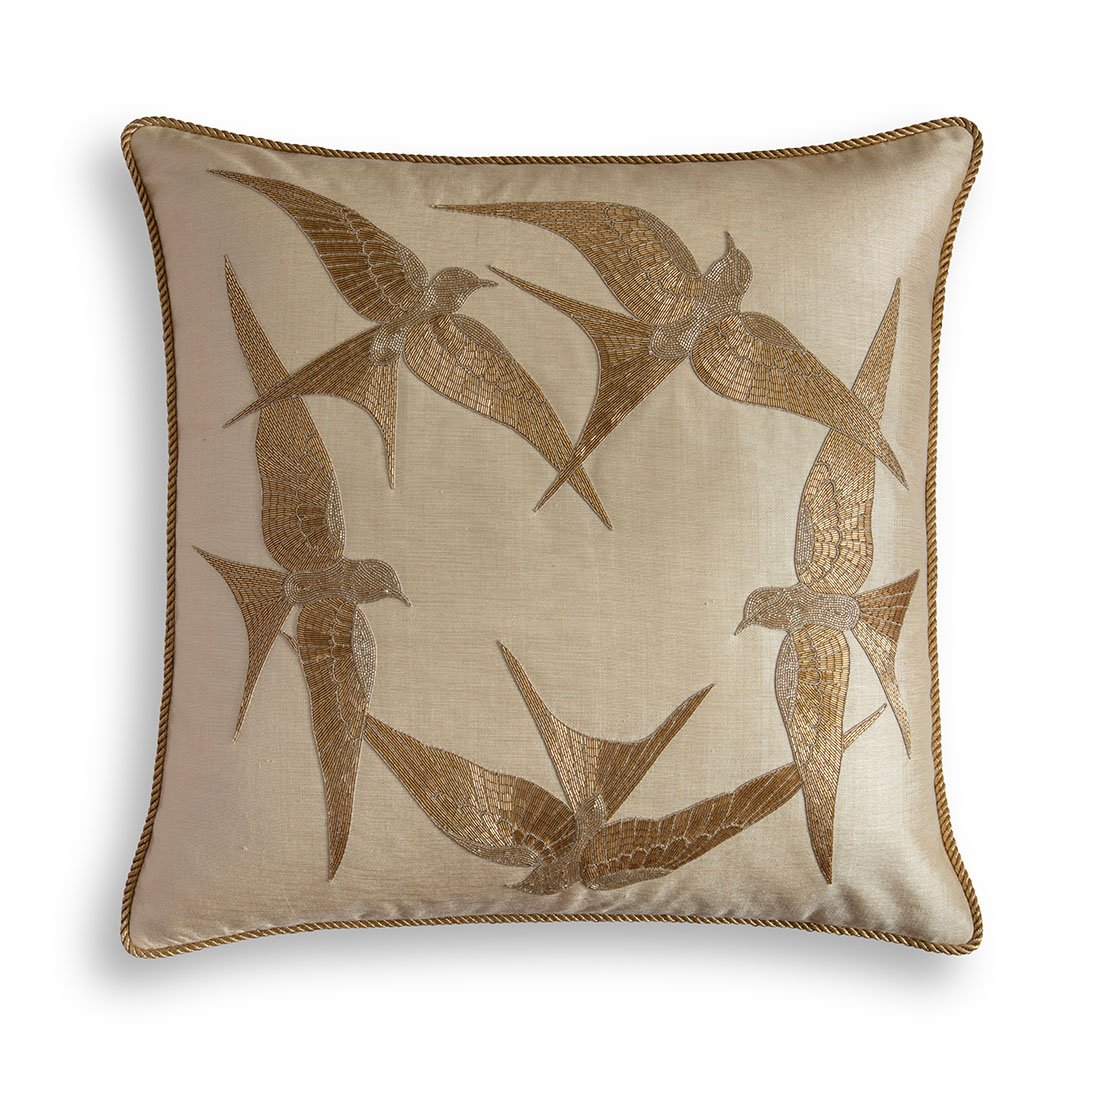 Elvira cushion in Lagan - Light gold - Beaumont & Fletcher